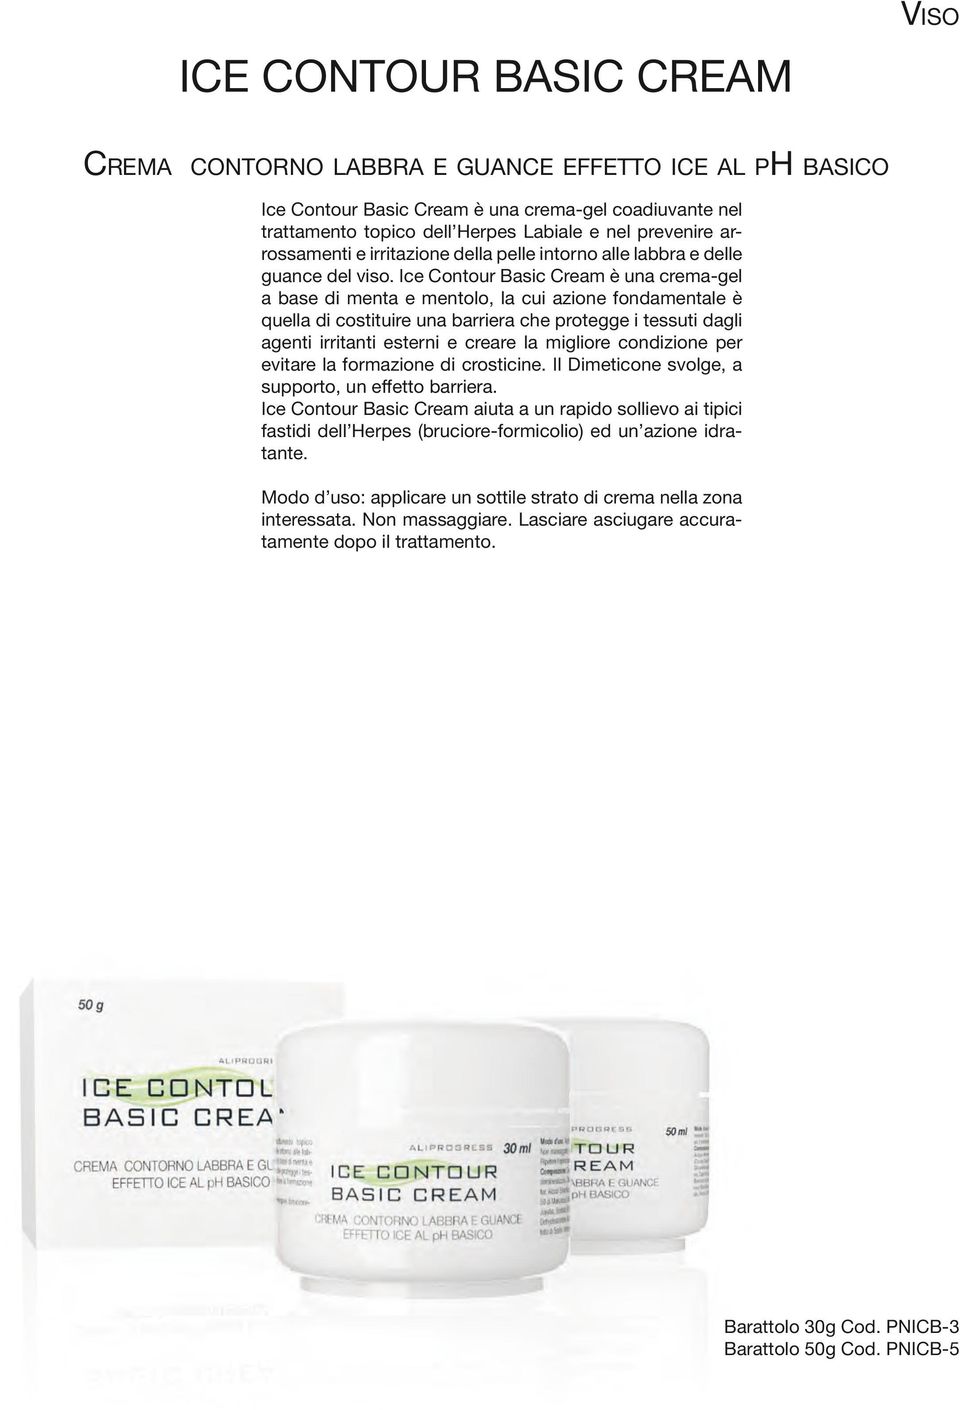 Ice Contour Basic Cream è una crema-gel a base di menta e mentolo, la cui azione fondamentale è quella di costituire una barriera che protegge i tessuti dagli agenti irritanti esterni e creare la